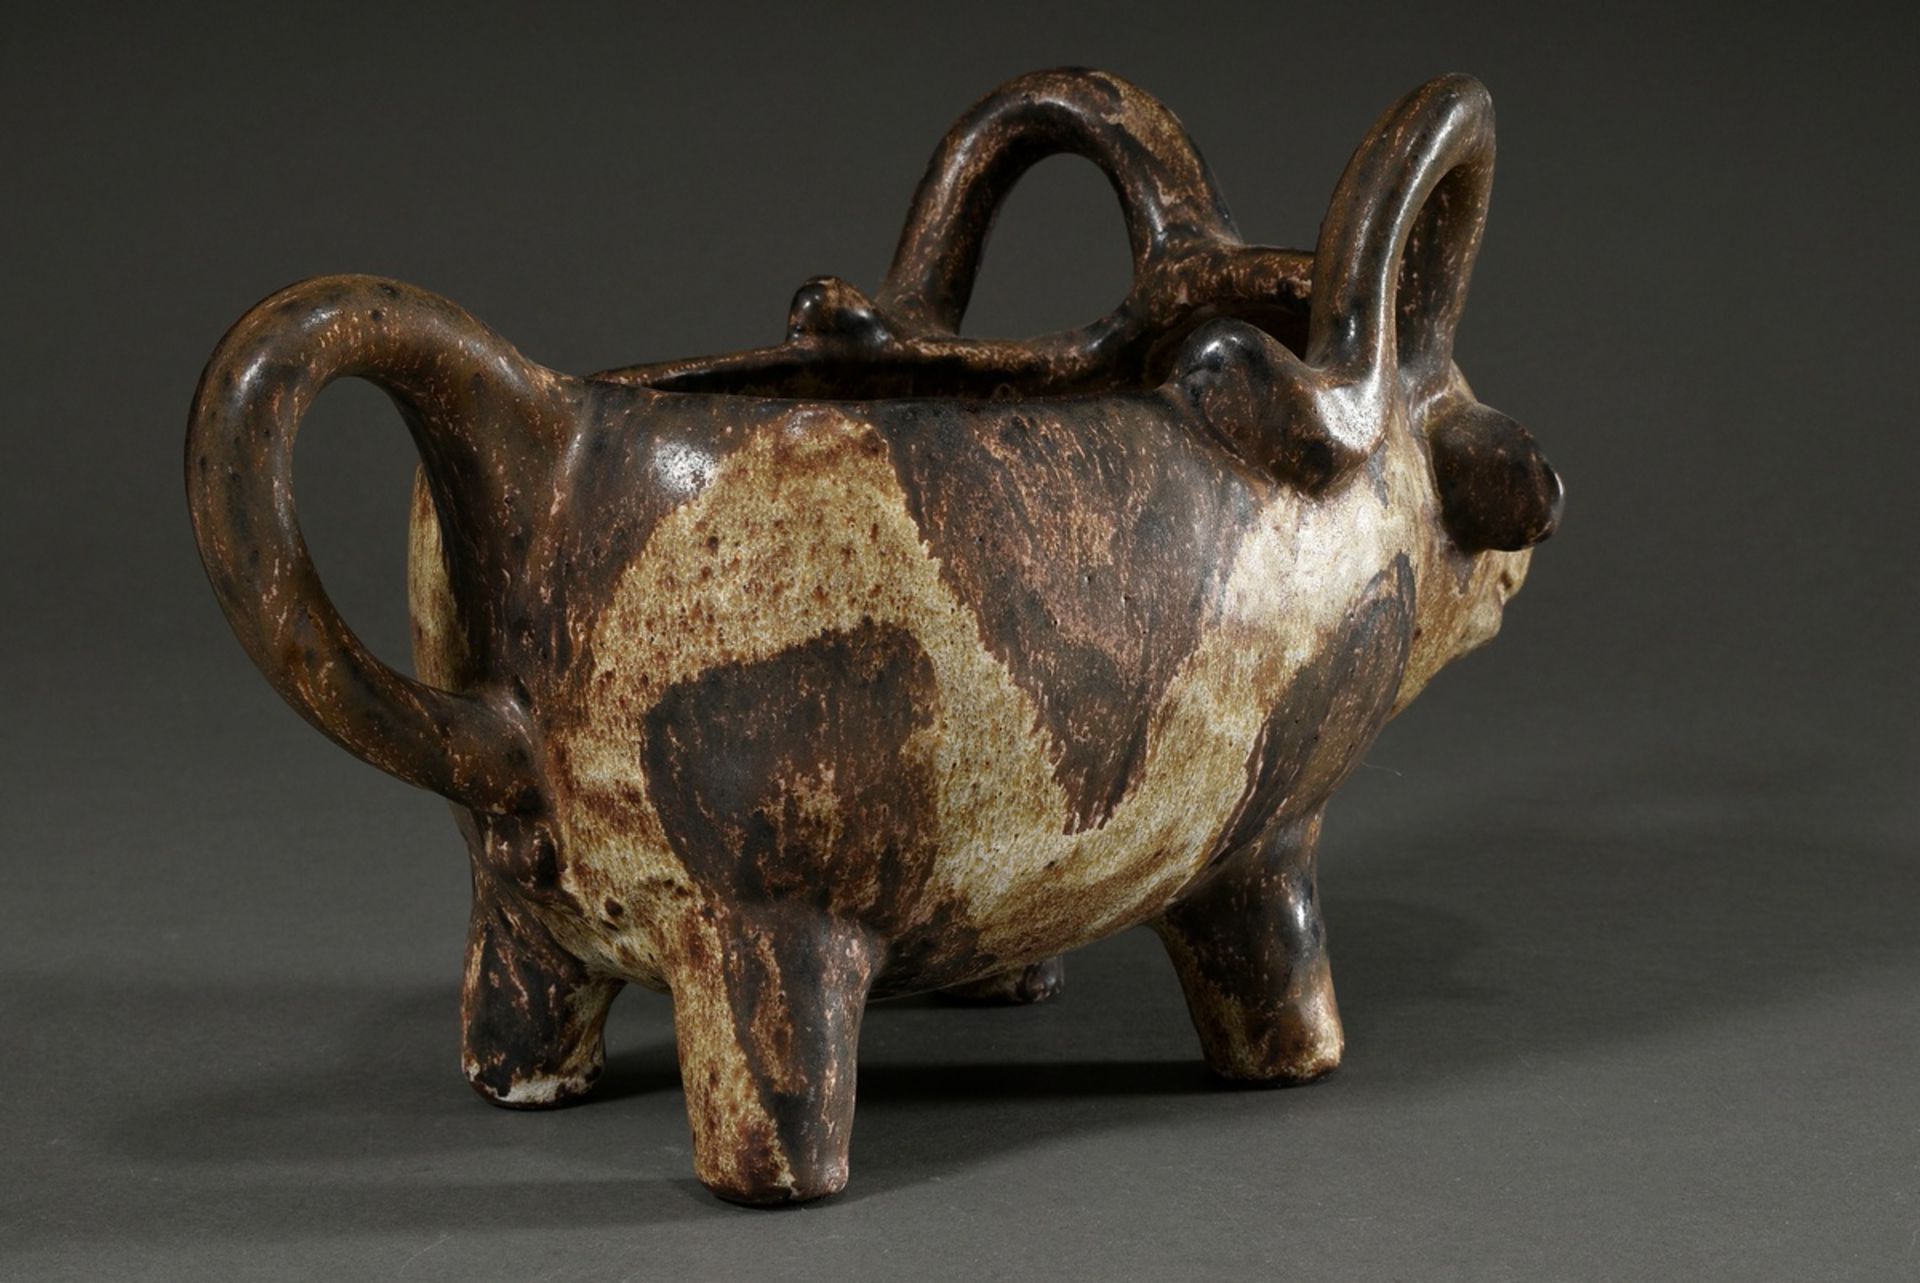 Maetzel, Monika (1917-2010) studio ceramics vessel in animal form "bull", ceramic white/brown glaze - Image 4 of 6